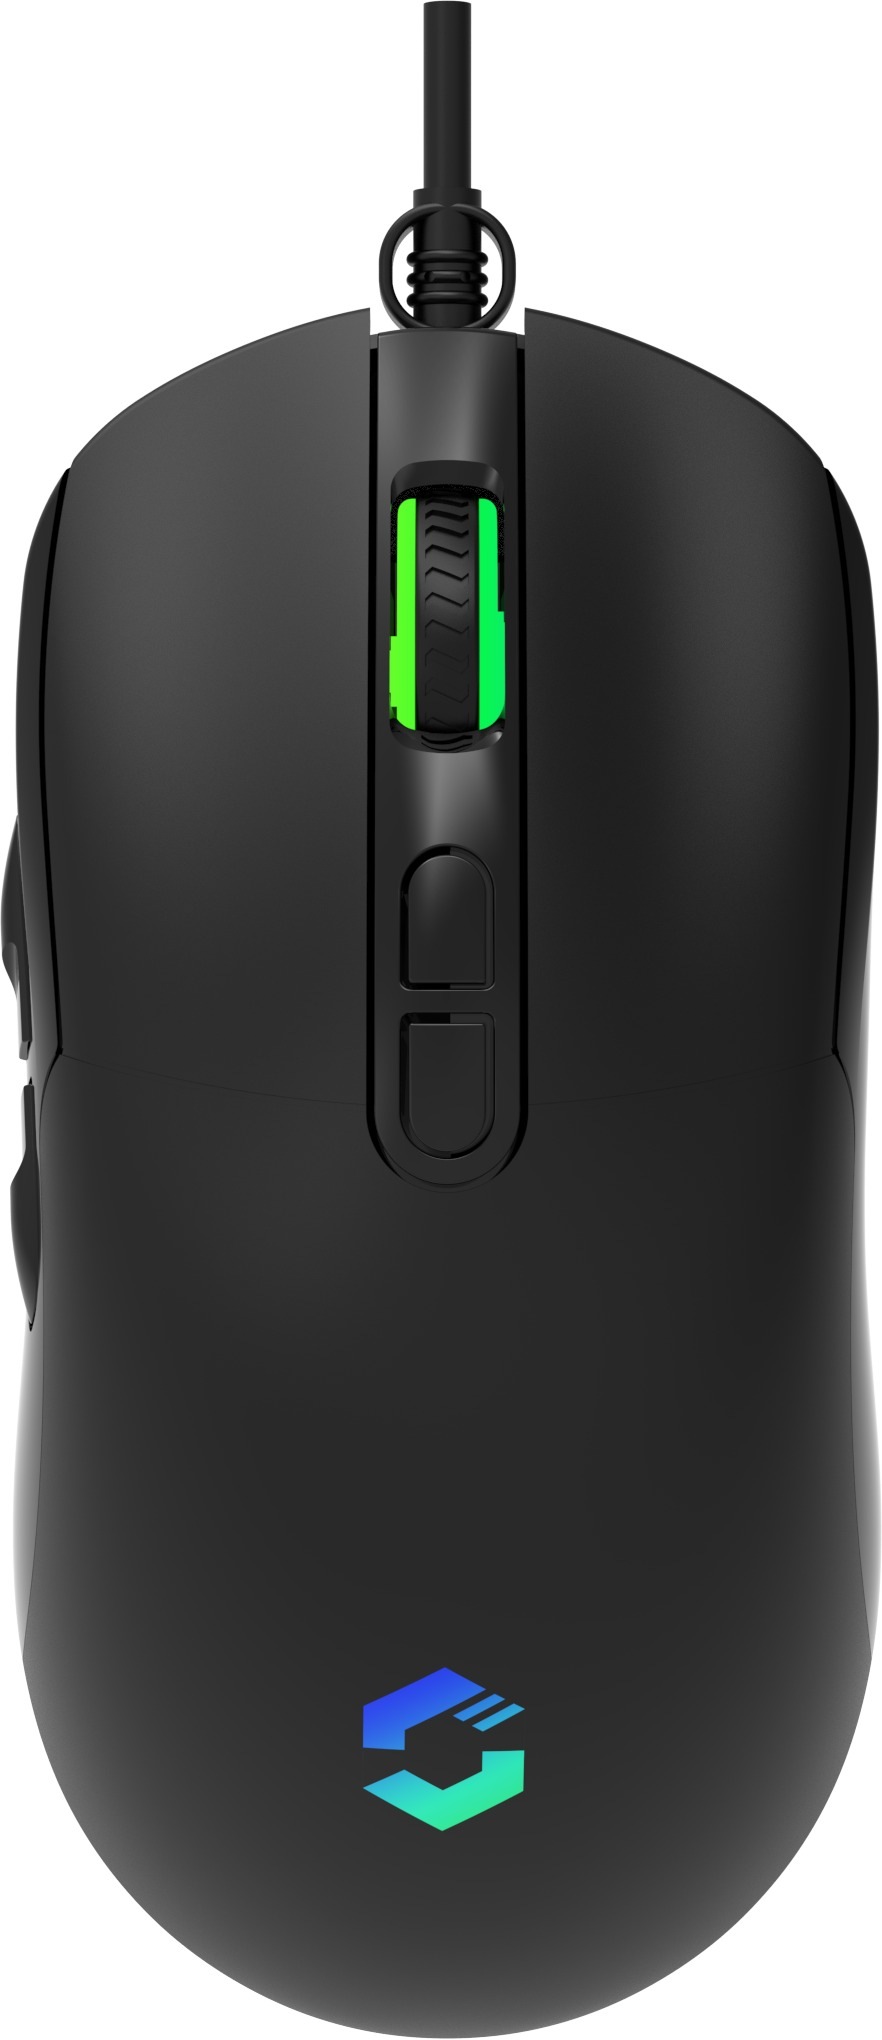 Speedlink Gaming-Maus »TAUROX«, RGB-Beleuchtung, 7.200 dpi, Internener Specher